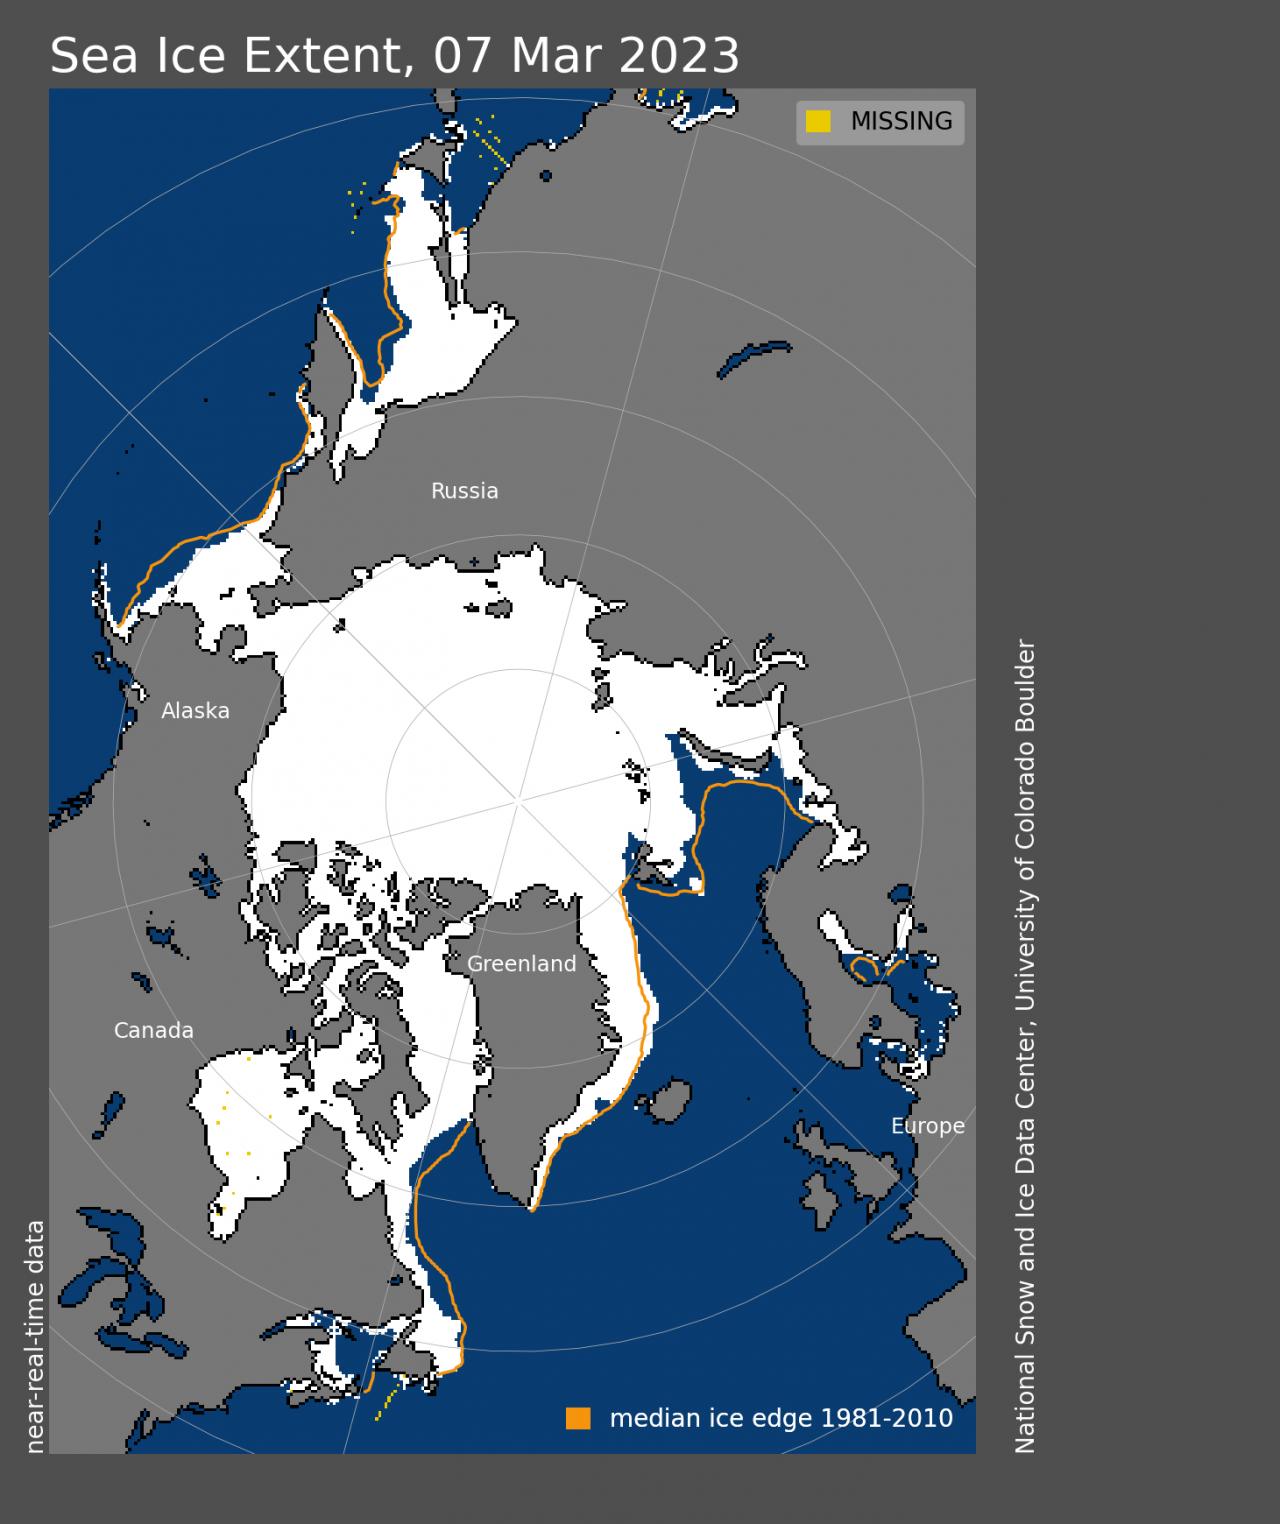 L'estensione dei ghiacci artici al 7 marzo scorso. In arancione il tracciato dell'estensione media trentennale 1981-2010, da cui si evincono diversi ammanchi di ghiaccio. Fonte NSIDC